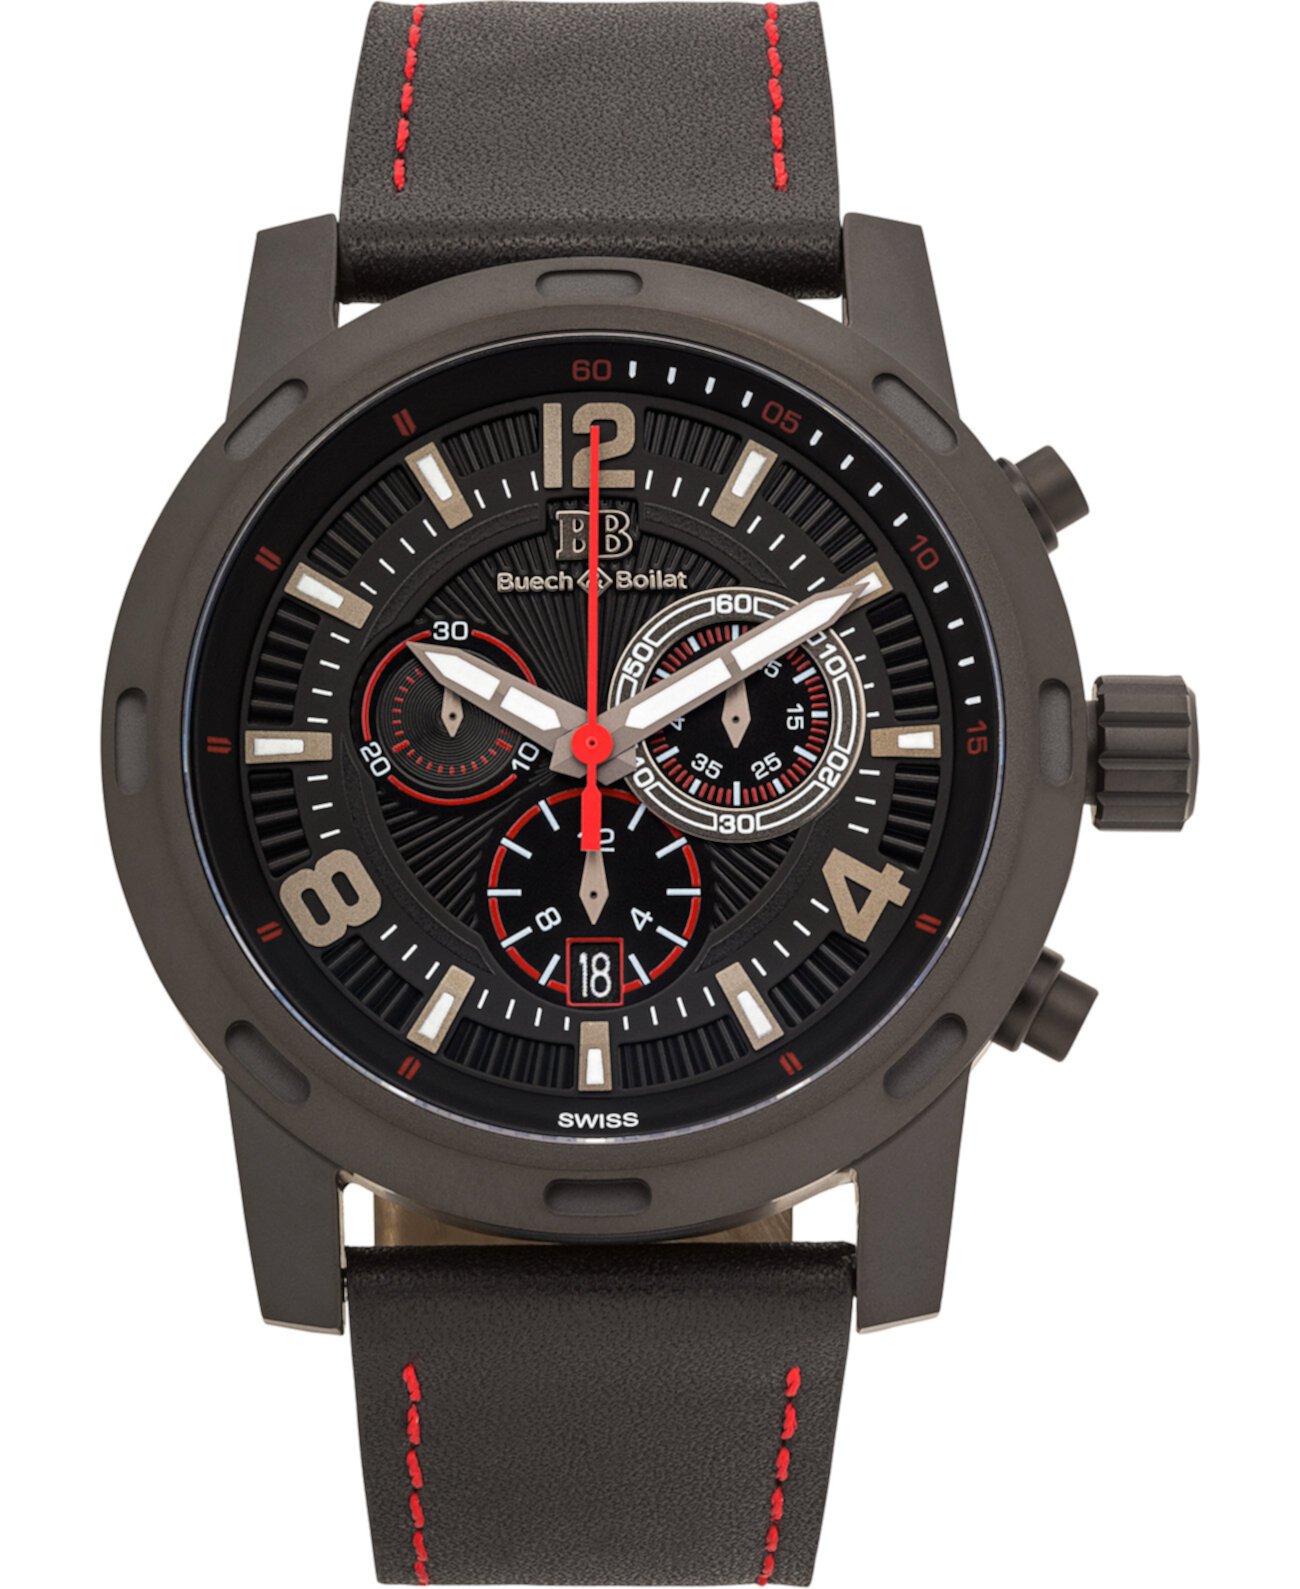 Мужские часы Baracchi Chronograph - черный кожаный ремешок, черный и красный циферблат, 46 мм Buech & Boilat